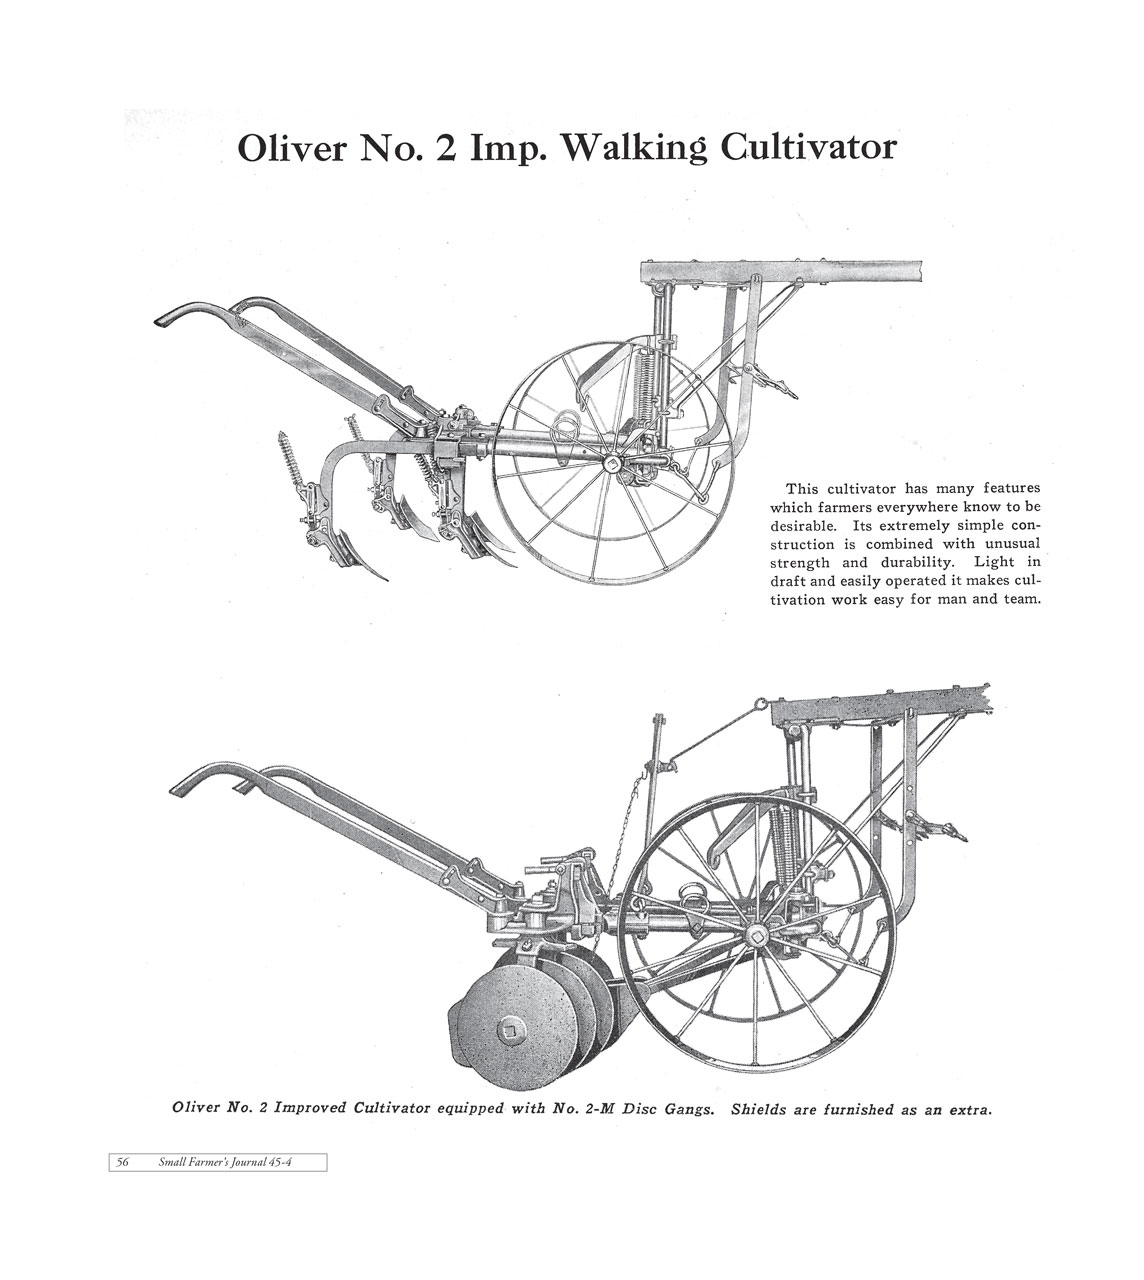 Oliver No 2 Improved Walking Cultivator